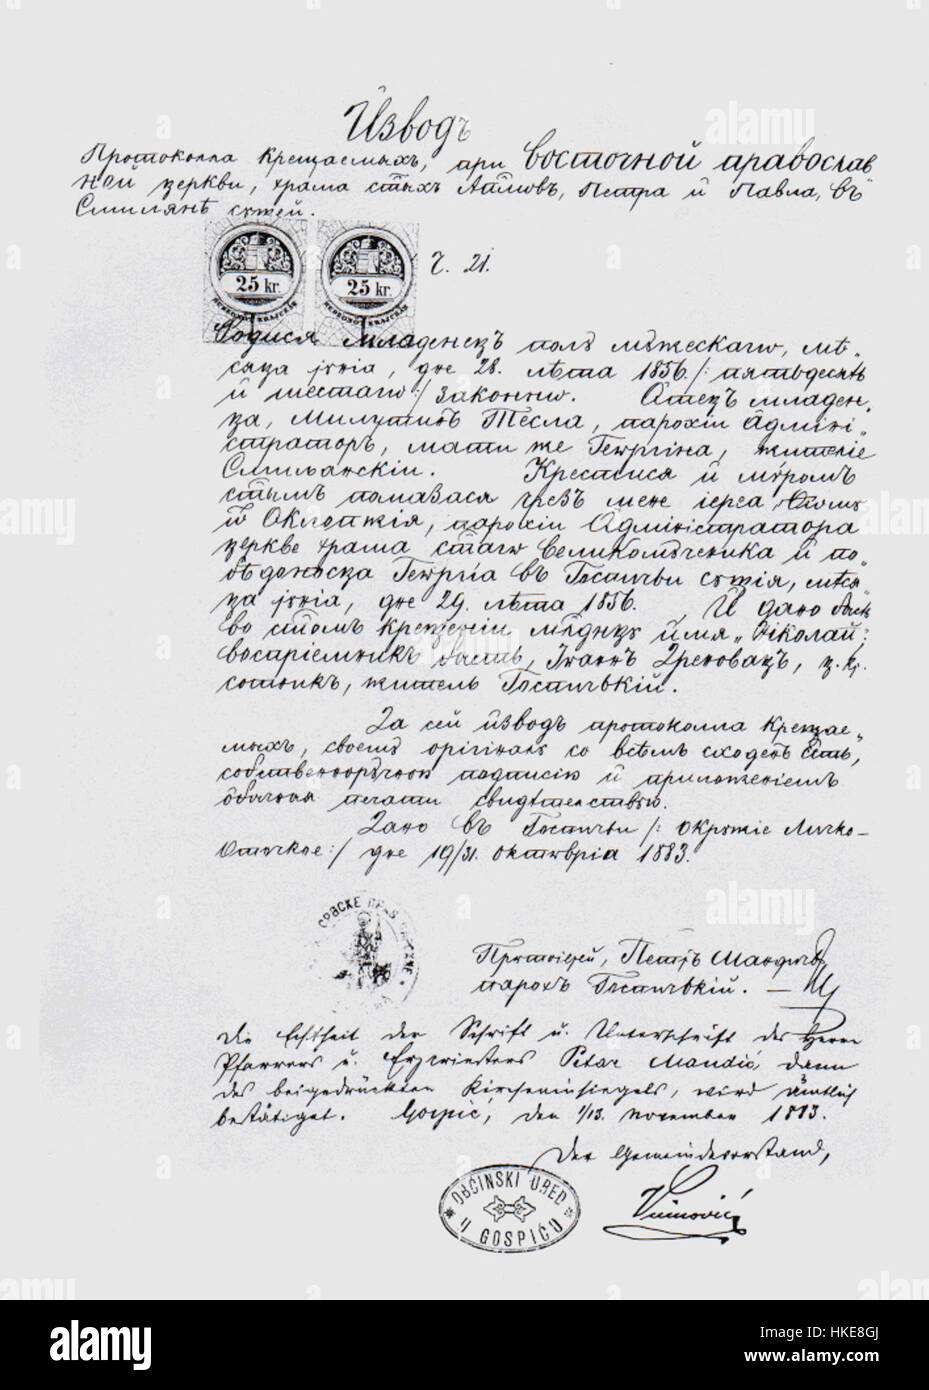 Tesla je bio Srbin, ali ne i Srbijanac, a Smiljan i Gospić jesu u Hrvatskoj - Page 4 Nikola-tesla-birth-certificate-HKE8GJ